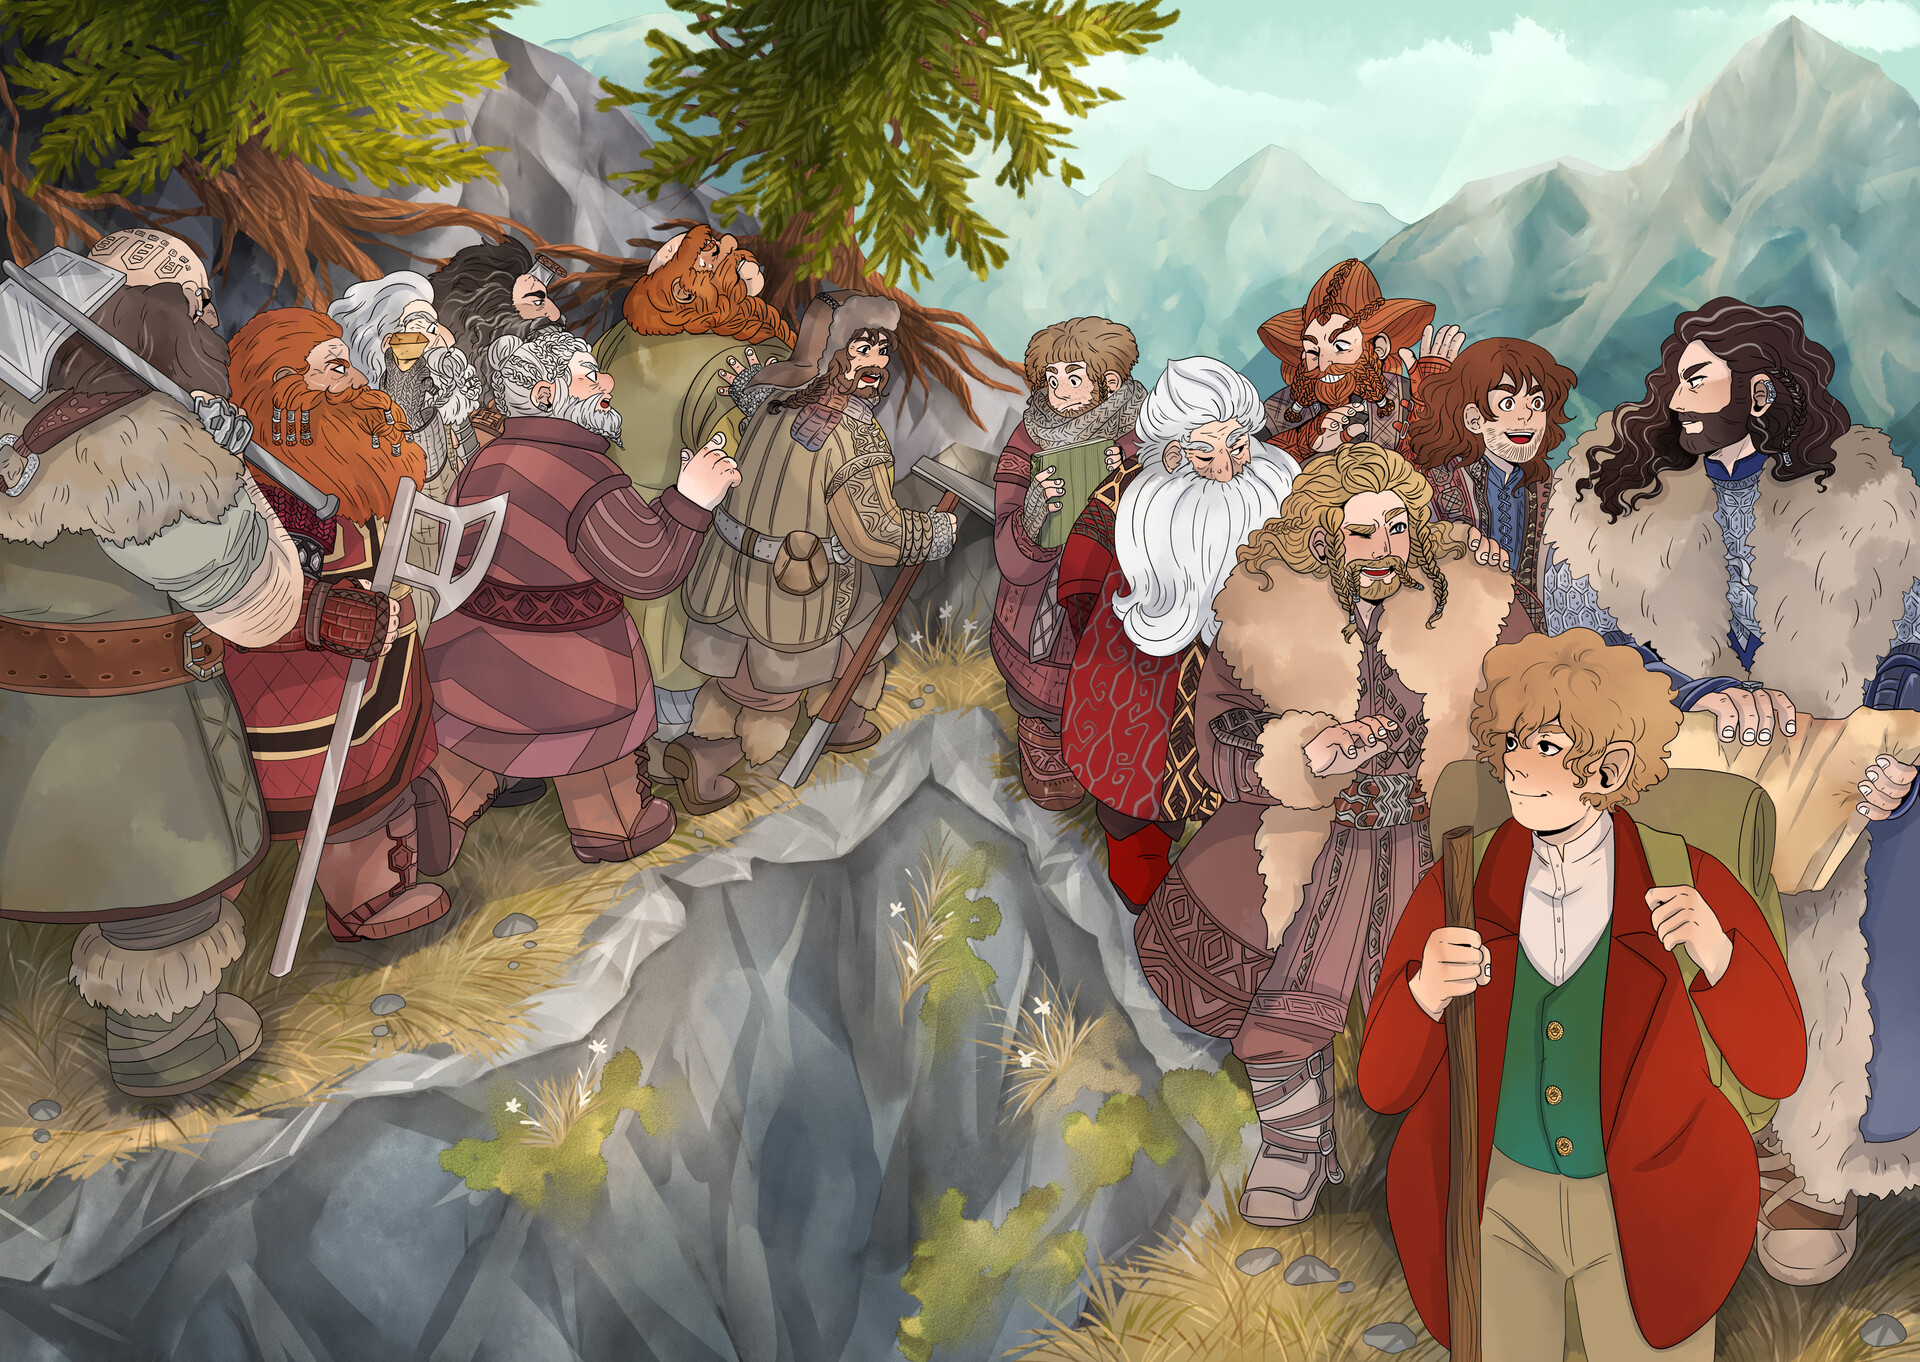 ArtStation - Bilbo and dwarfs- Hobbit illustration